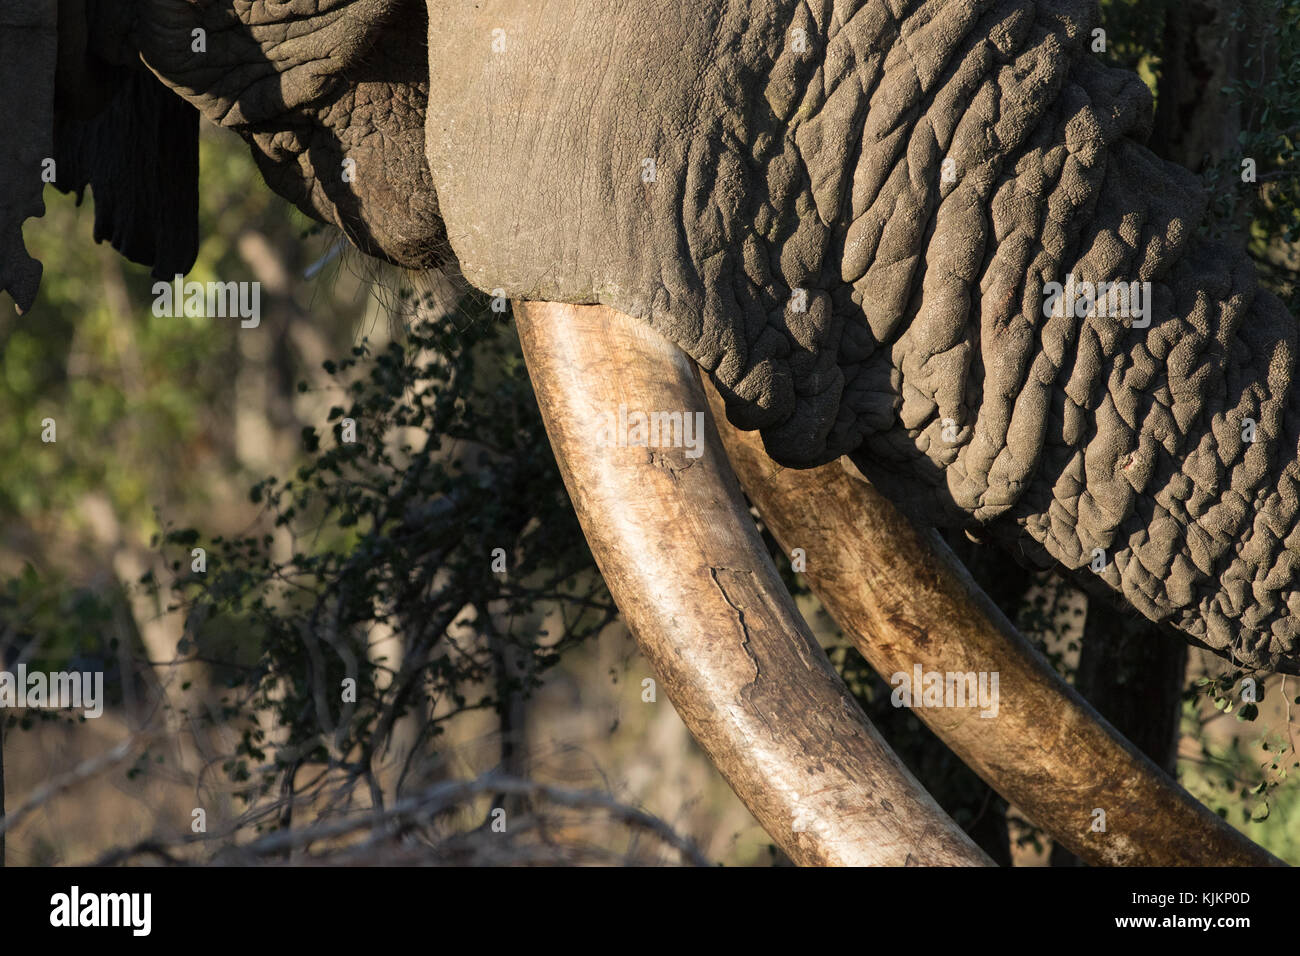 Krüger National Park. Afrikanischer Elefant (Loxodonta africana). Nahaufnahme der Stamm und die Stosszähne. Südafrika. Stockfoto